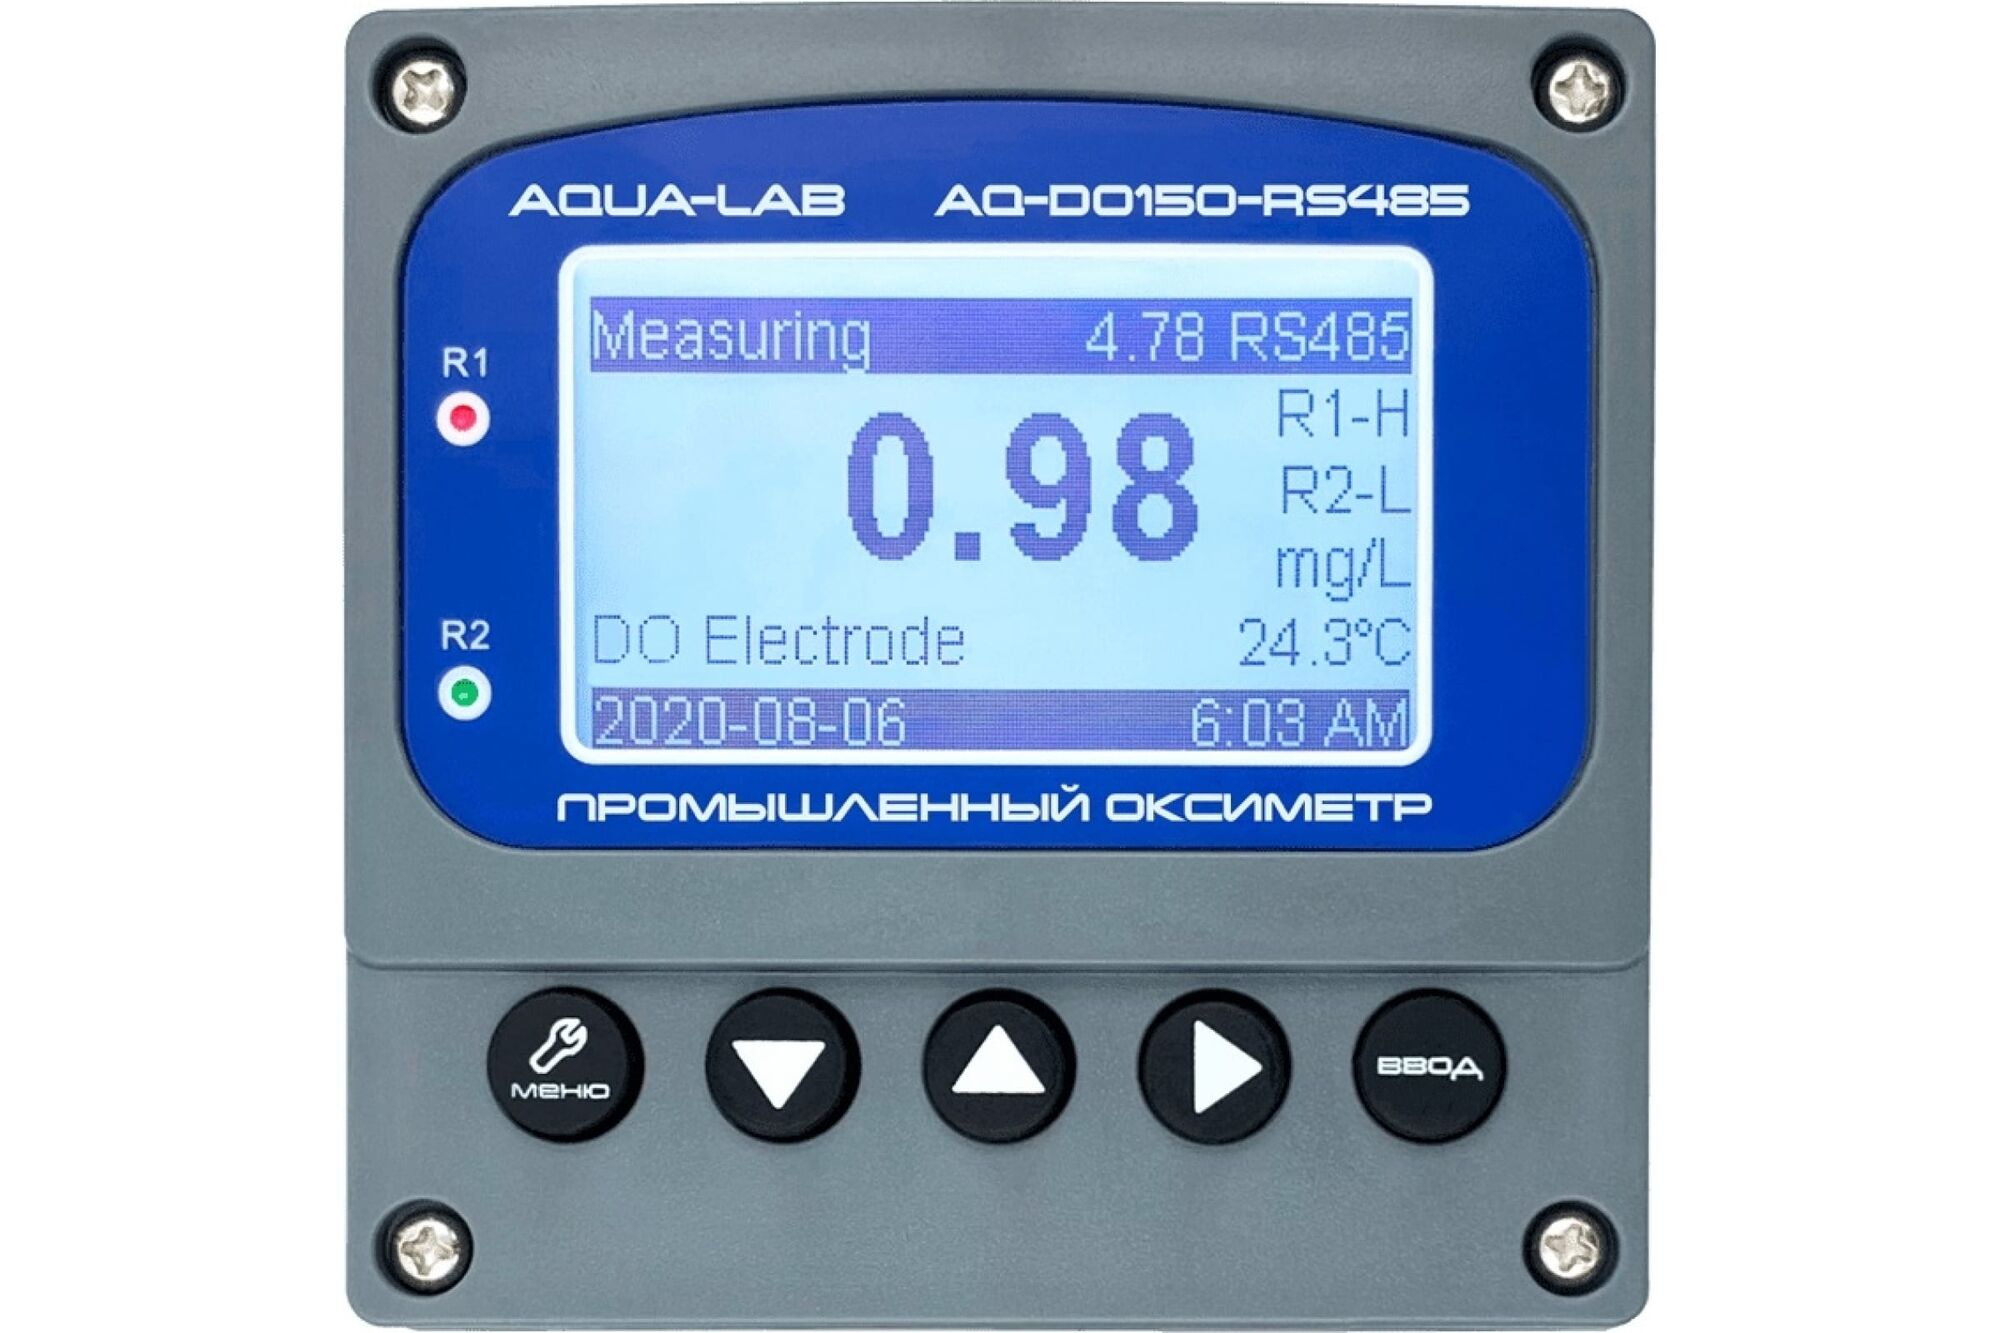 Промышленный оксиметр-контроллер AQUA-LAB AQ-DO150-RS485